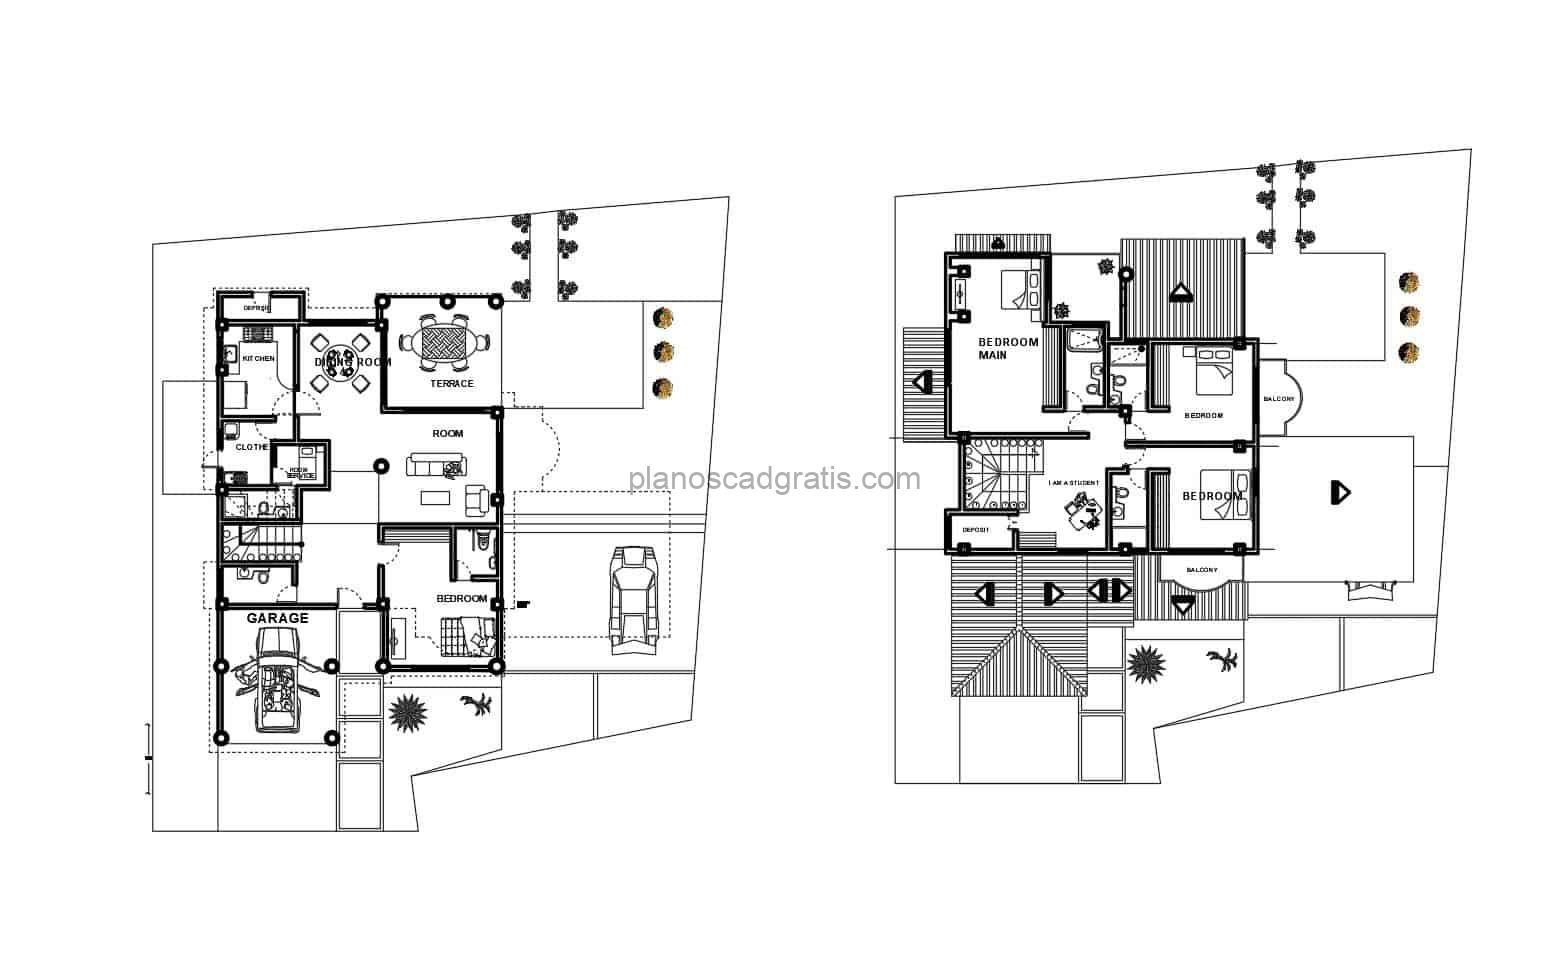 plano arquitectonico de residencia moderna de dos niveles dibujo 2d en formato dwg de autocad, planta con dimensiones, fachada, secciones, detalles electrictos, sanitarios y cimentación